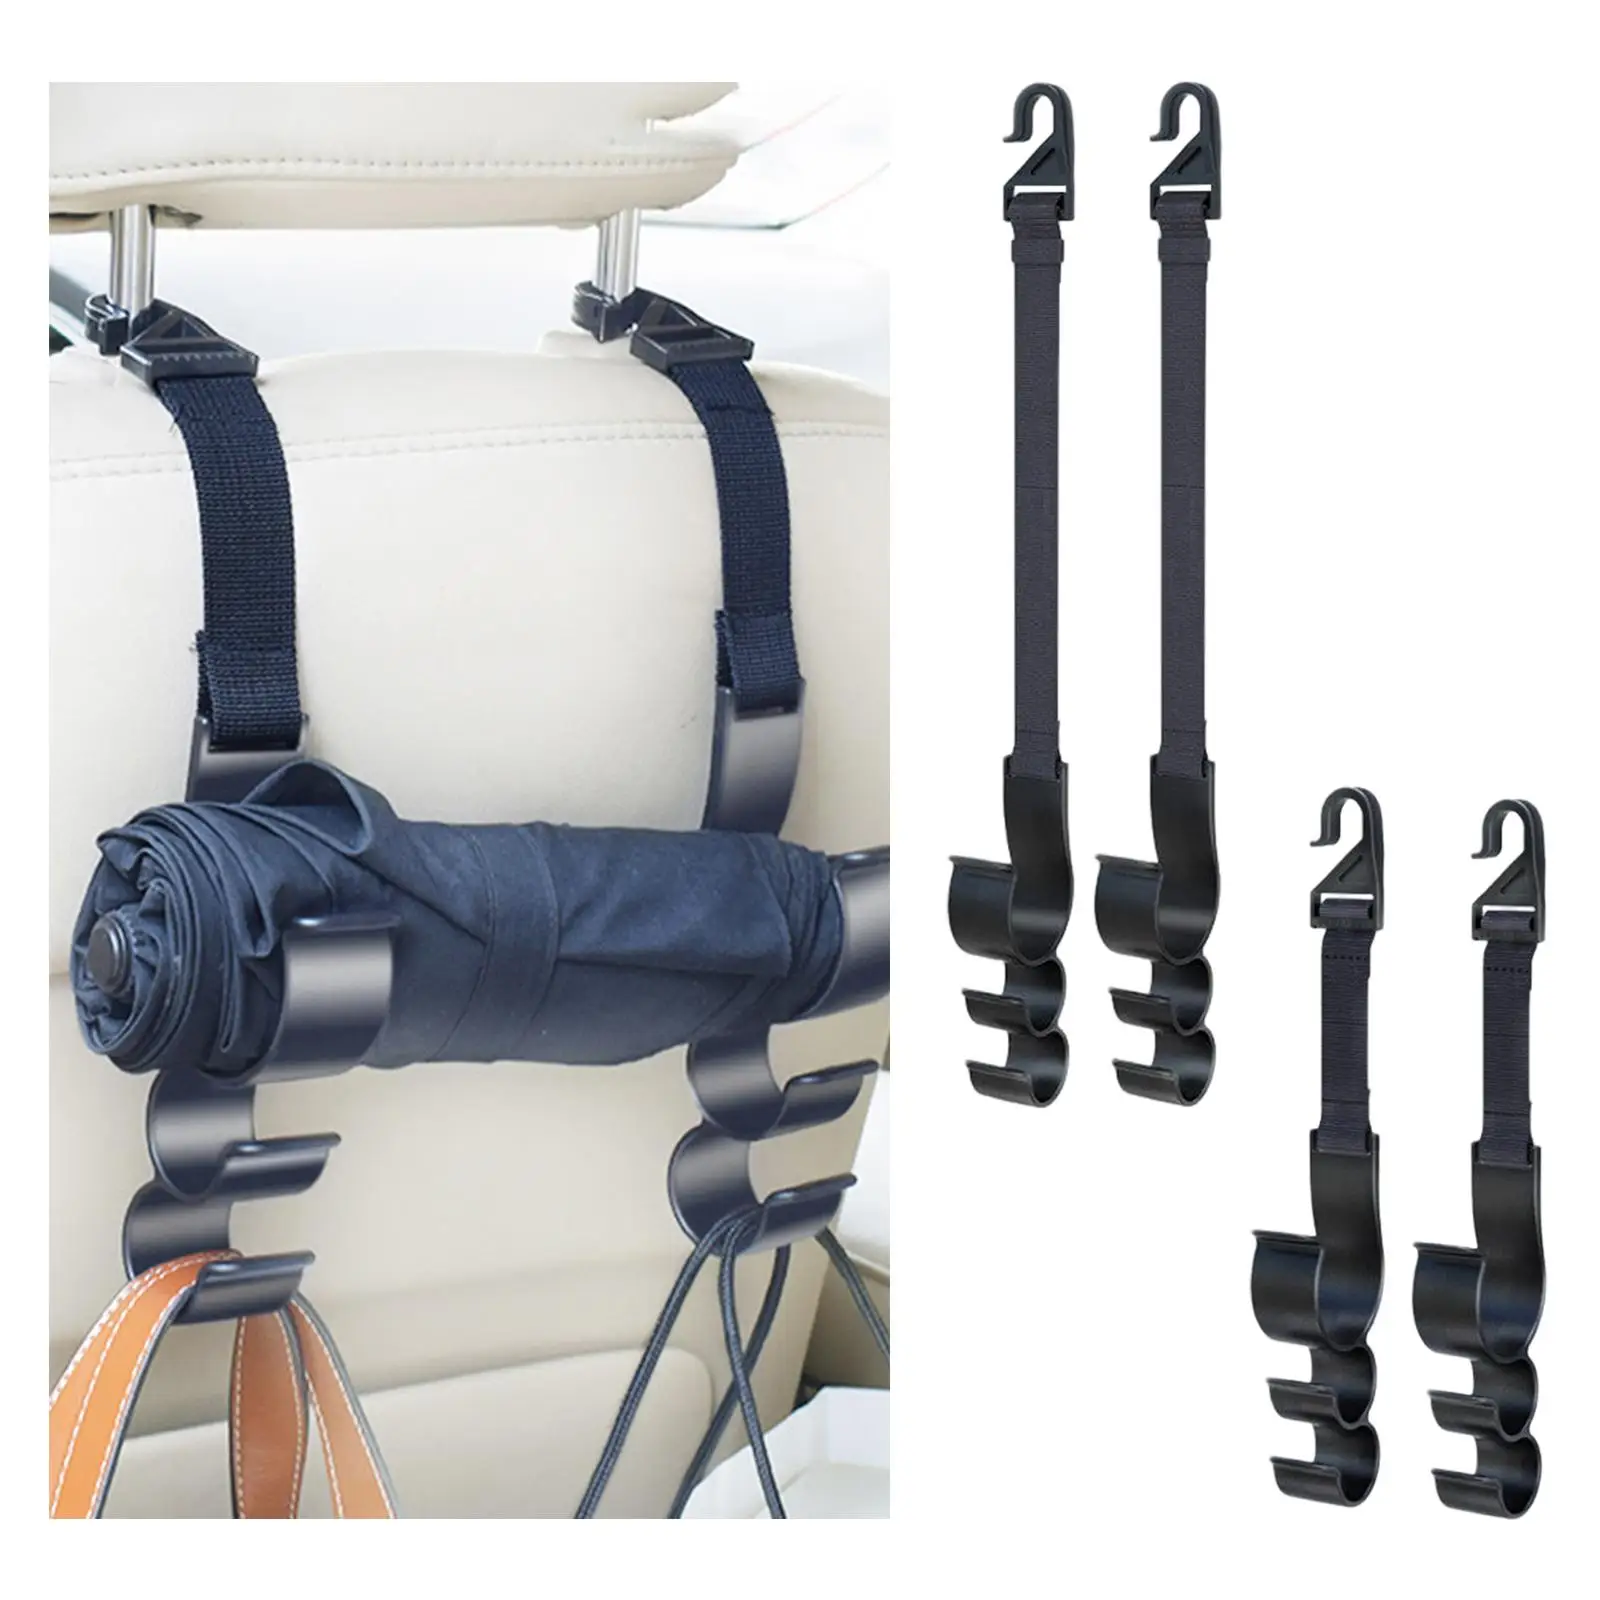 Headrest Hooks for Car Durable Headrest Hook Holder fit for Handbag